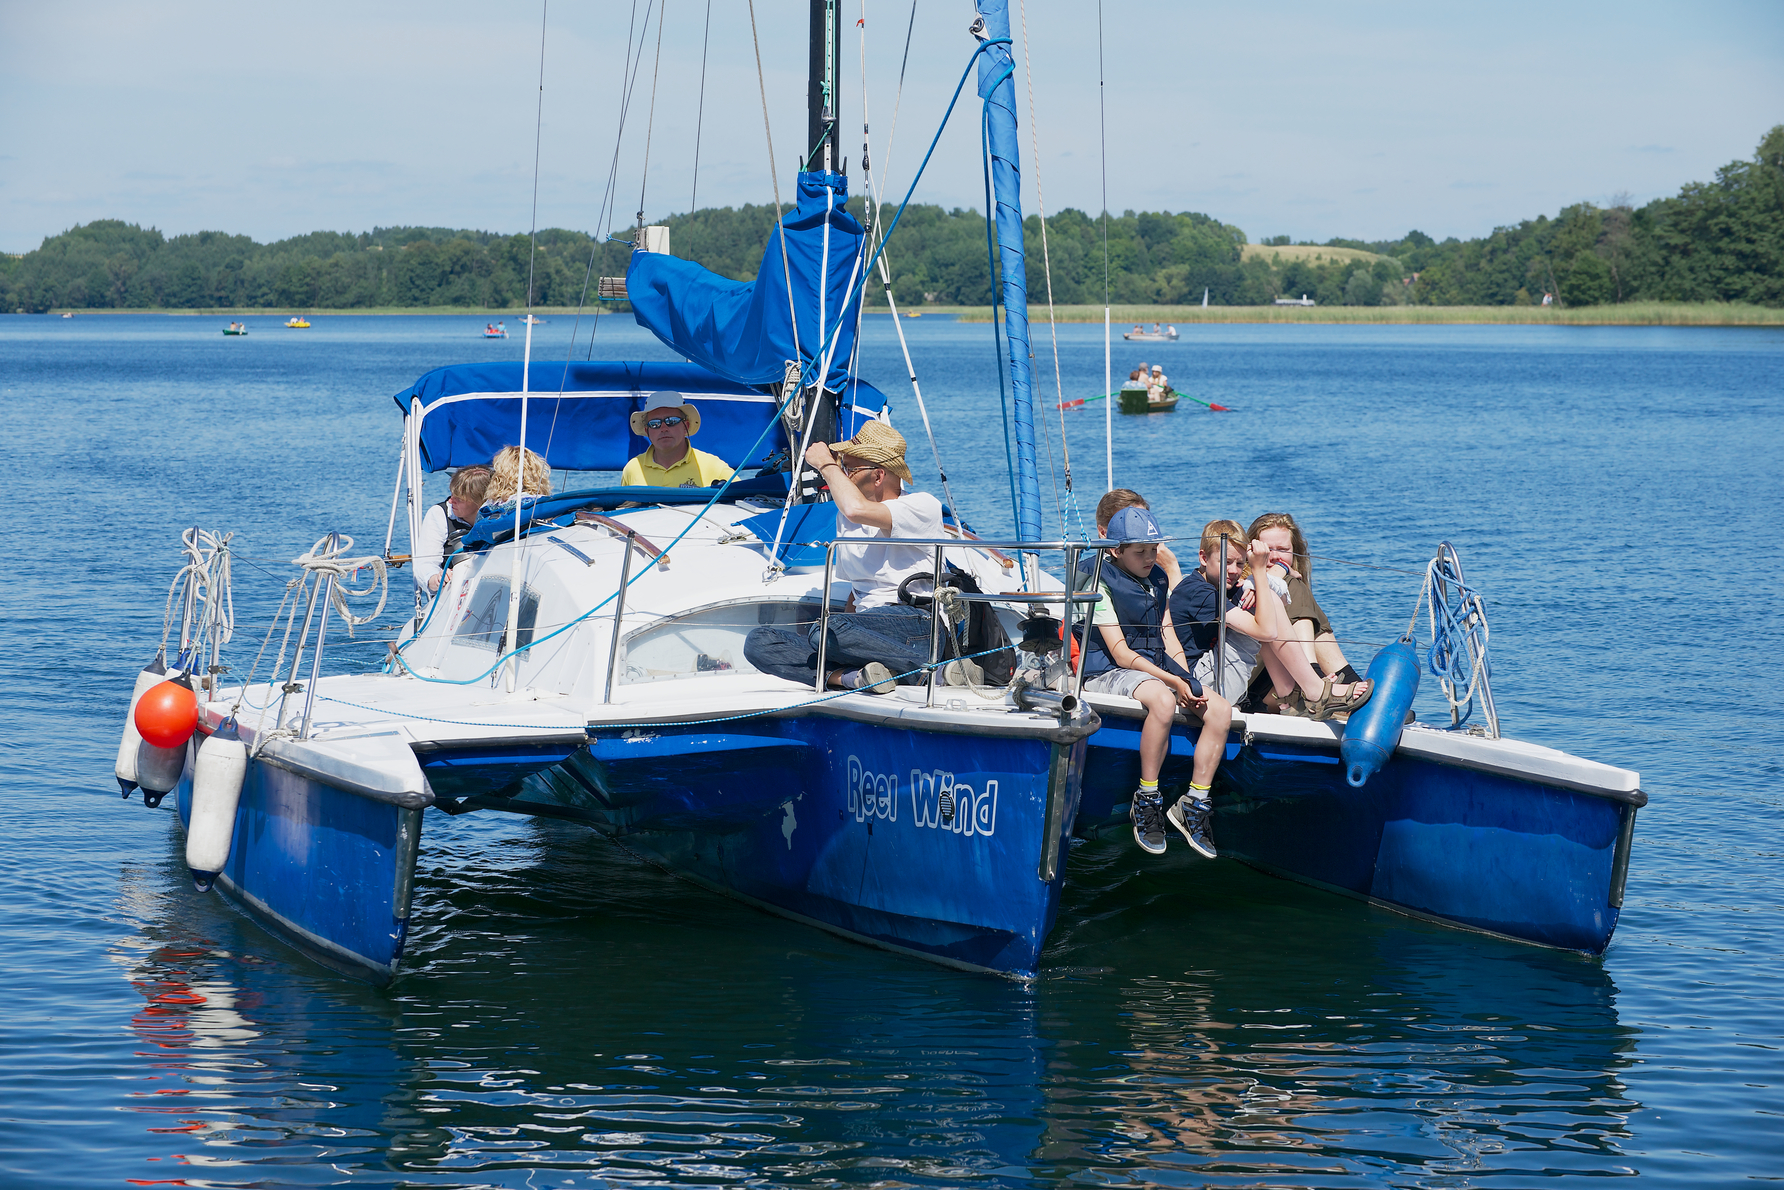 People enjoy boat trip at Galve lake in Trakai, Lithuania.